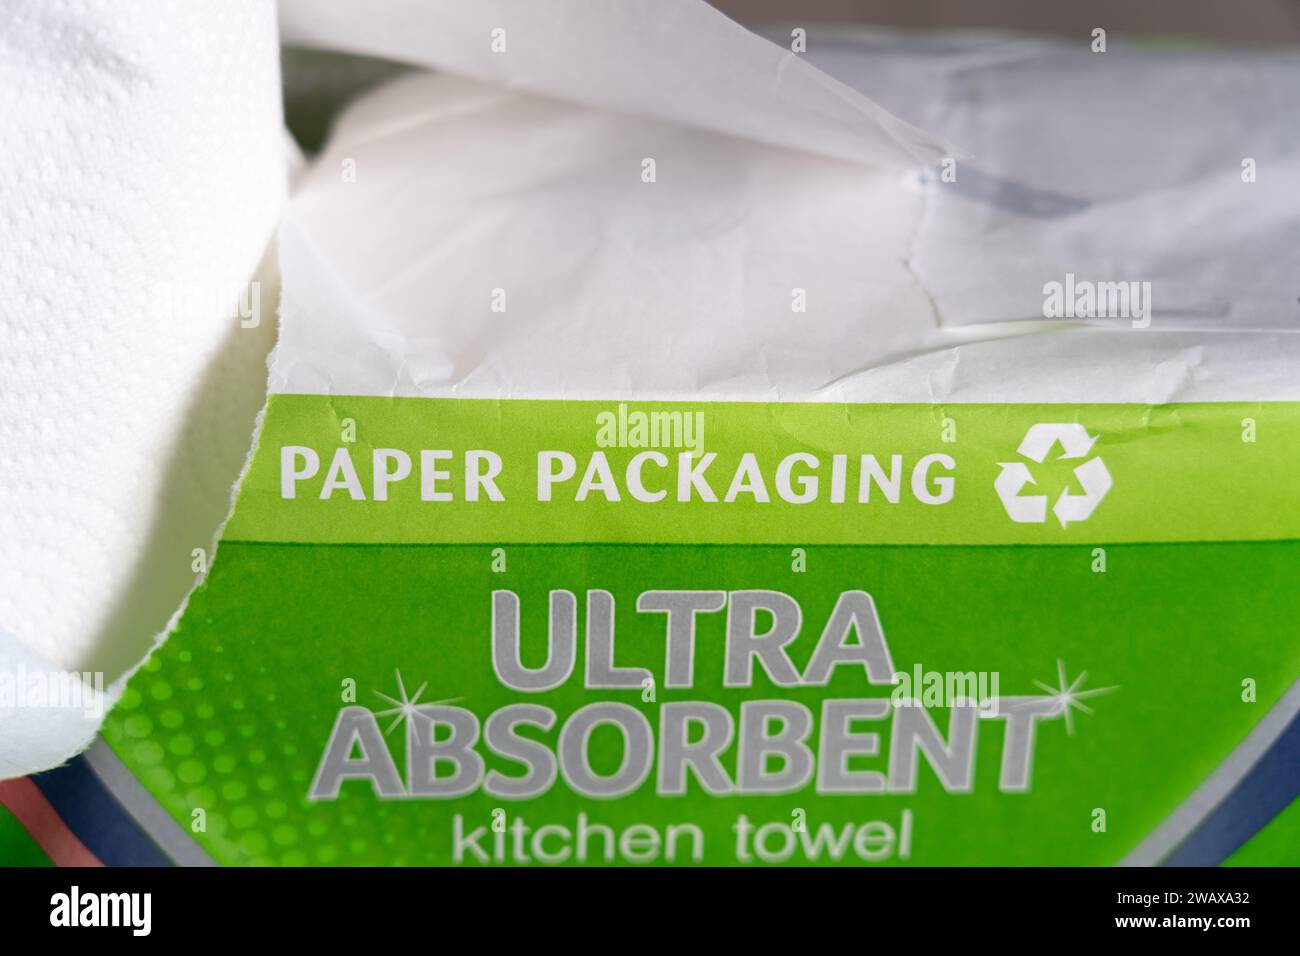 Confezione di asciugamani da cucina a marchio Sainsbury con imballaggio in carta e simbolo di riciclaggio, Regno Unito. Concetto: Riduzione degli sprechi, riduzione degli sprechi di plastica Foto Stock